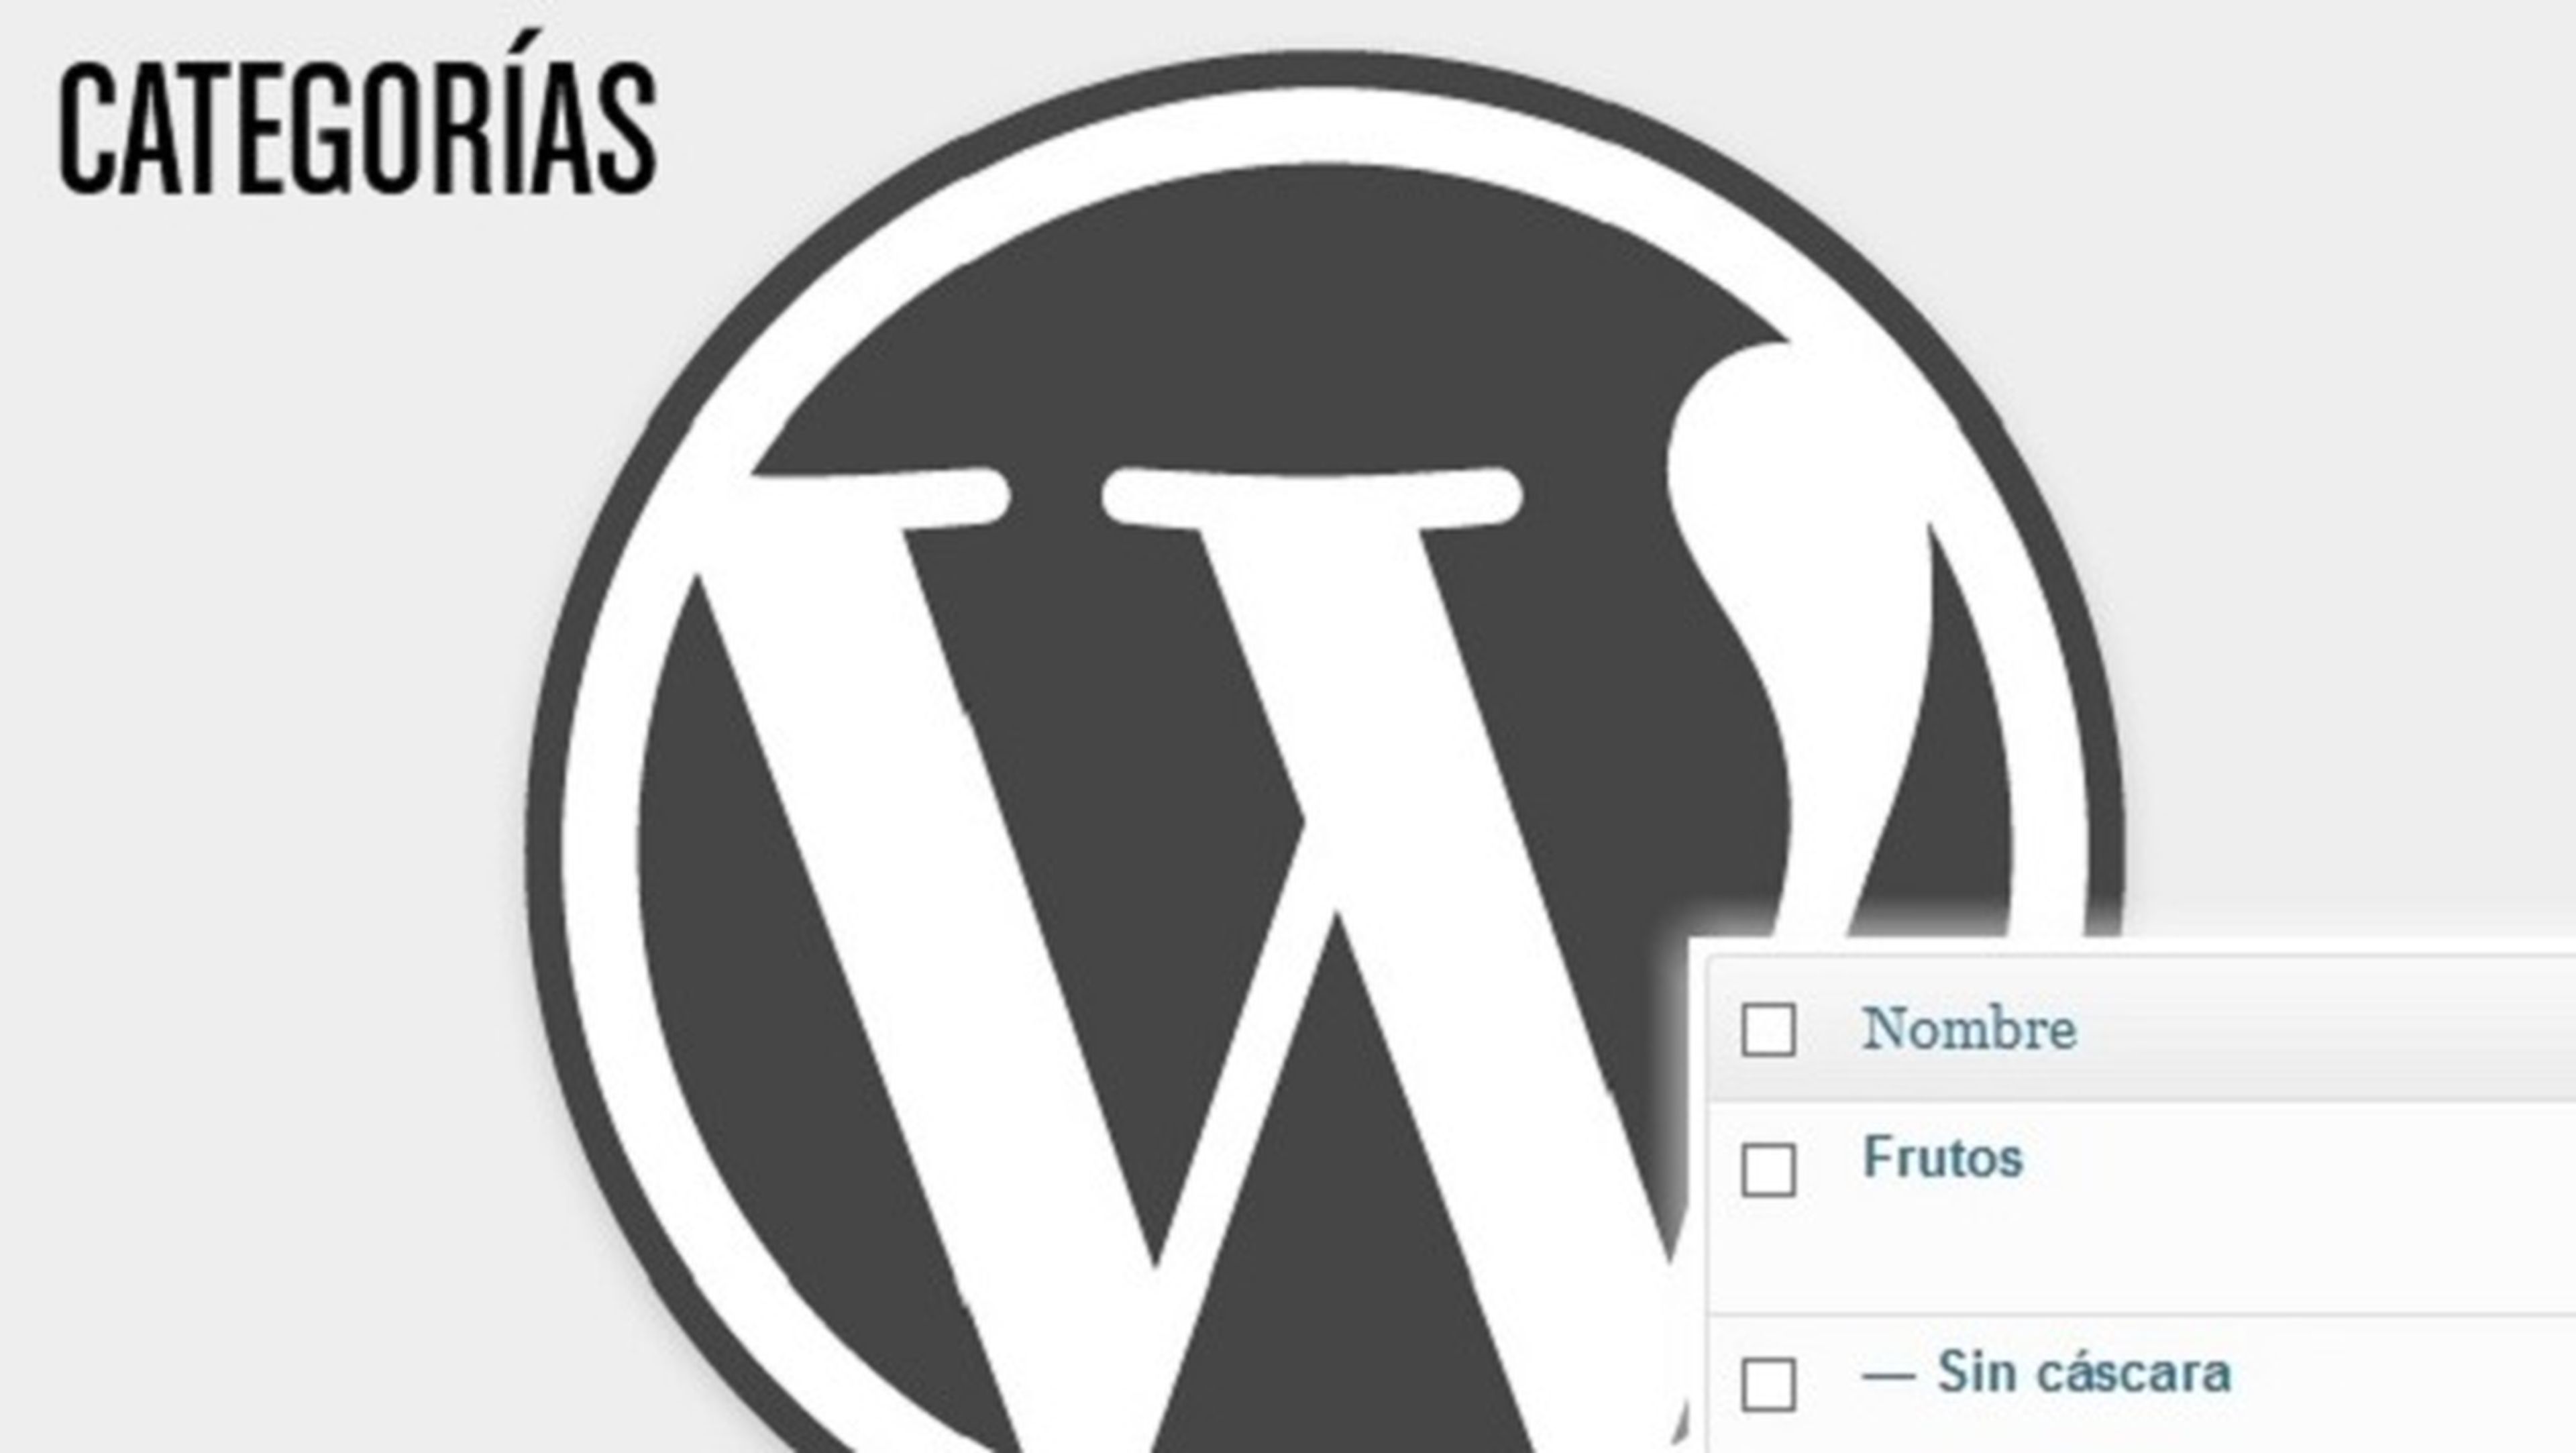 Curso de WordPress: Categorías y etiquetas